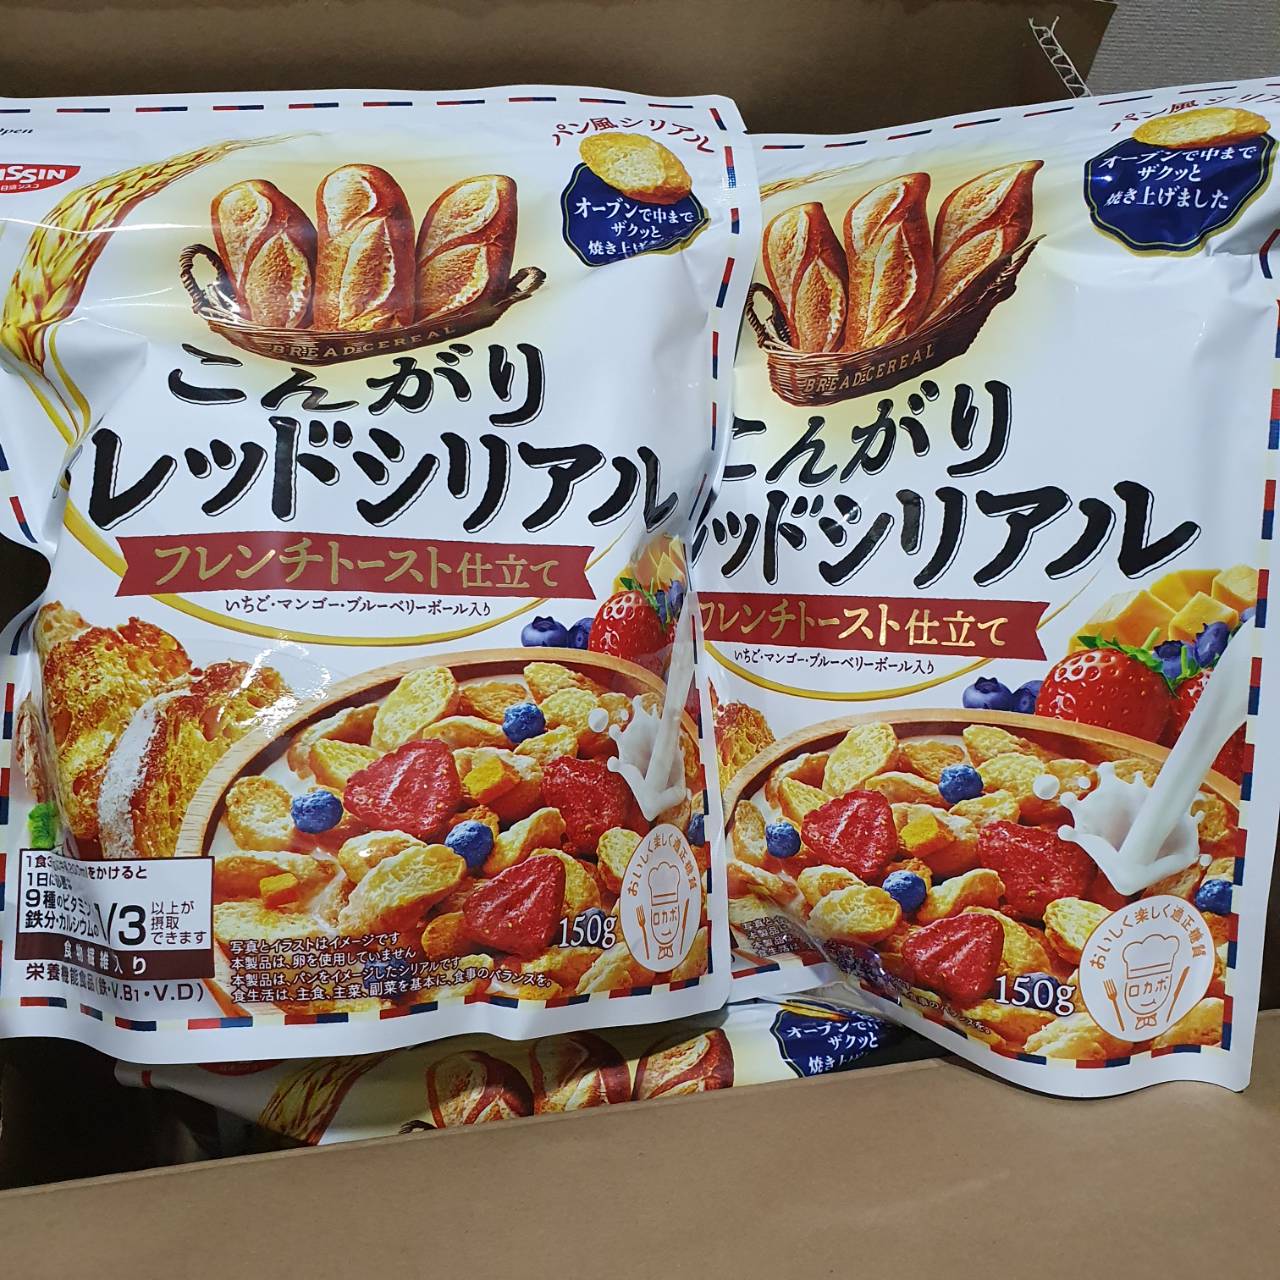 พร้อมส่ง ขนมญี่ปุ่น NISSIN bread cereal granola กราโนล่าขนมปังกรอบ รวมกับสตรอเบอร์รี บลูเบอร์รี่ มะม่วง EXP2021/12